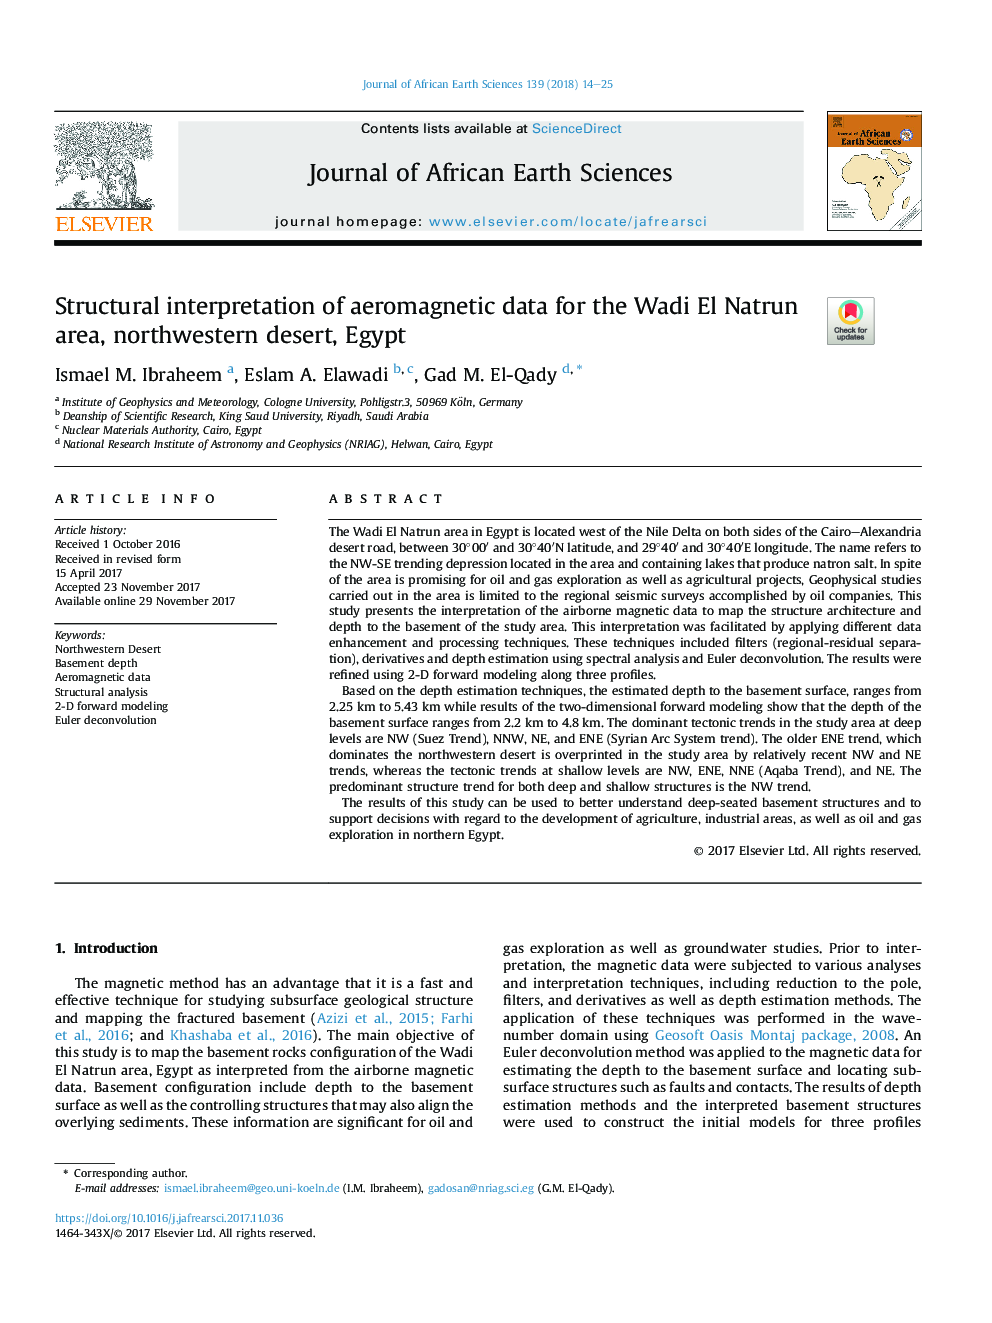 تفسیر ساختاری داده های هوای مغناطیسی برای منطقه وادی ال ناترون، کویر شمال غربی، مصر